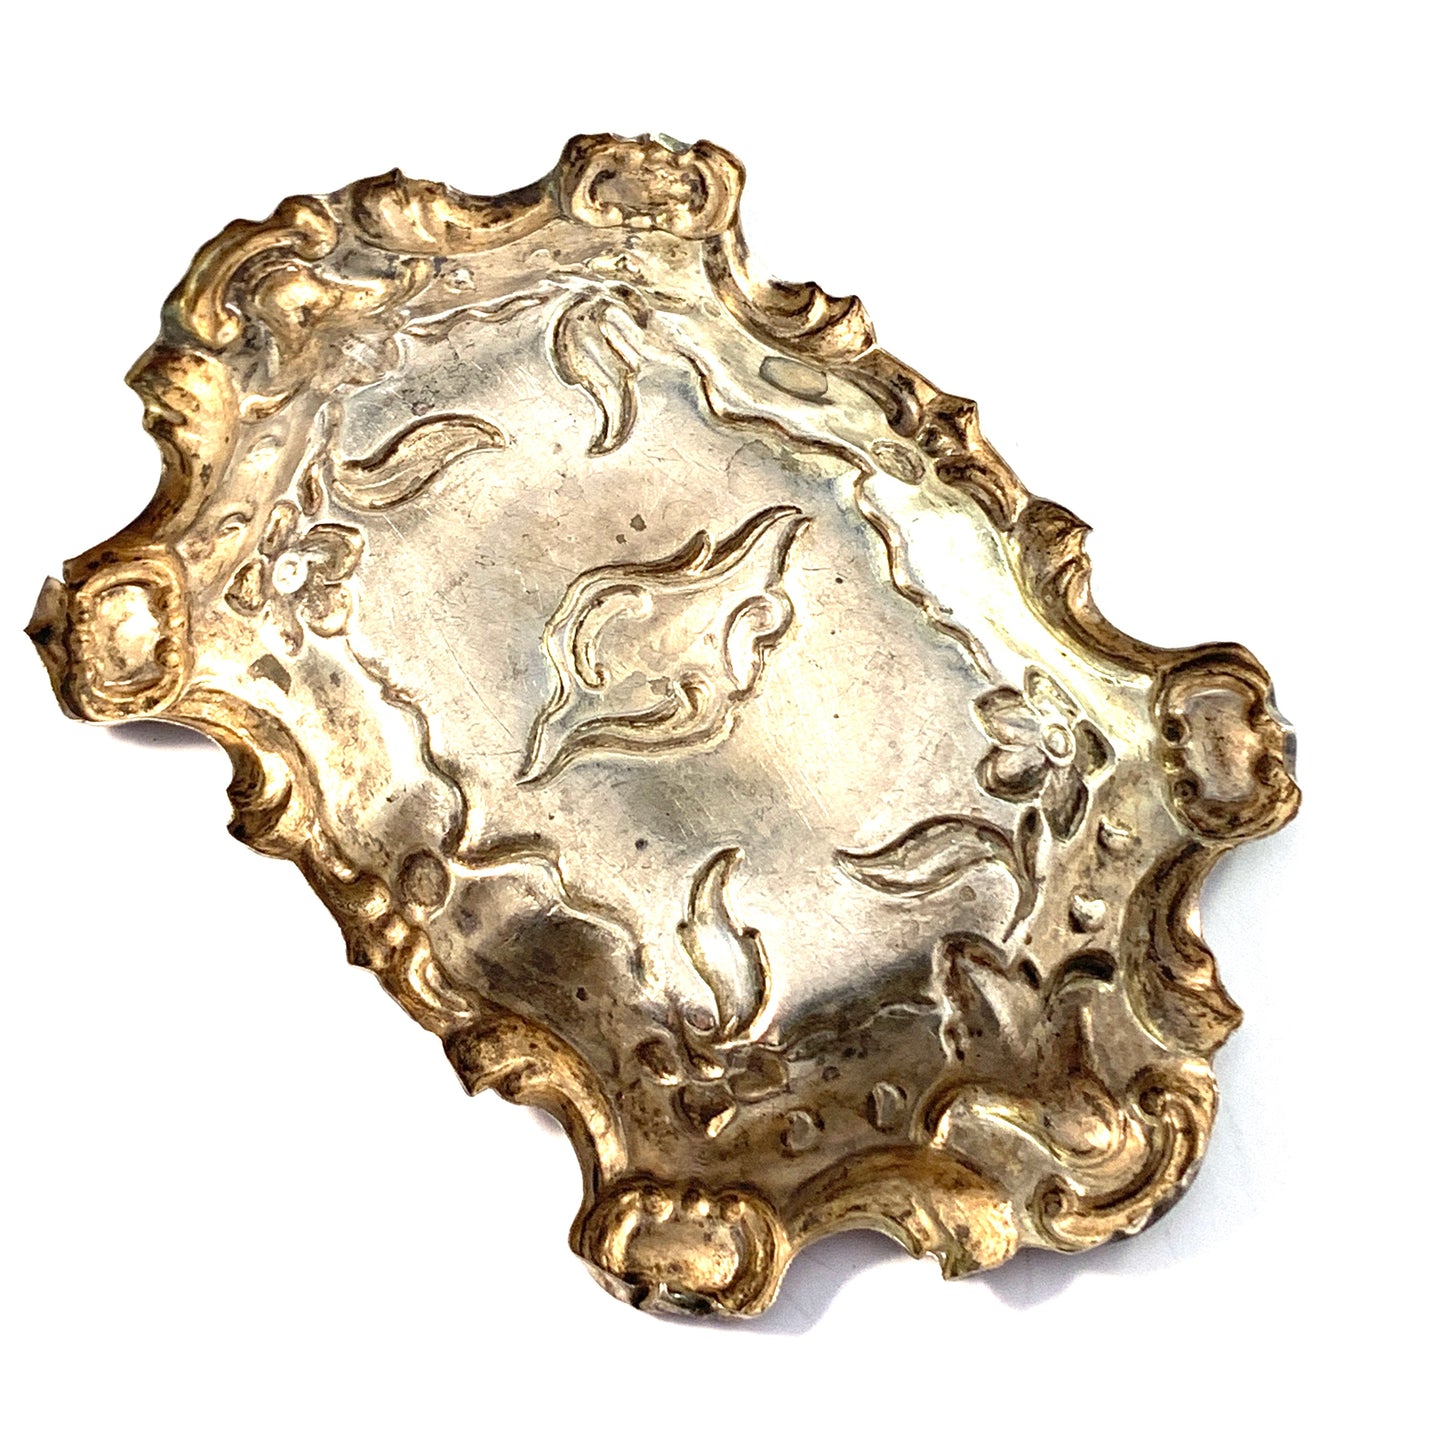 JPE, Sweden year 1855. Victorian Sterling Silver Trinket Needle Jewelry Tray